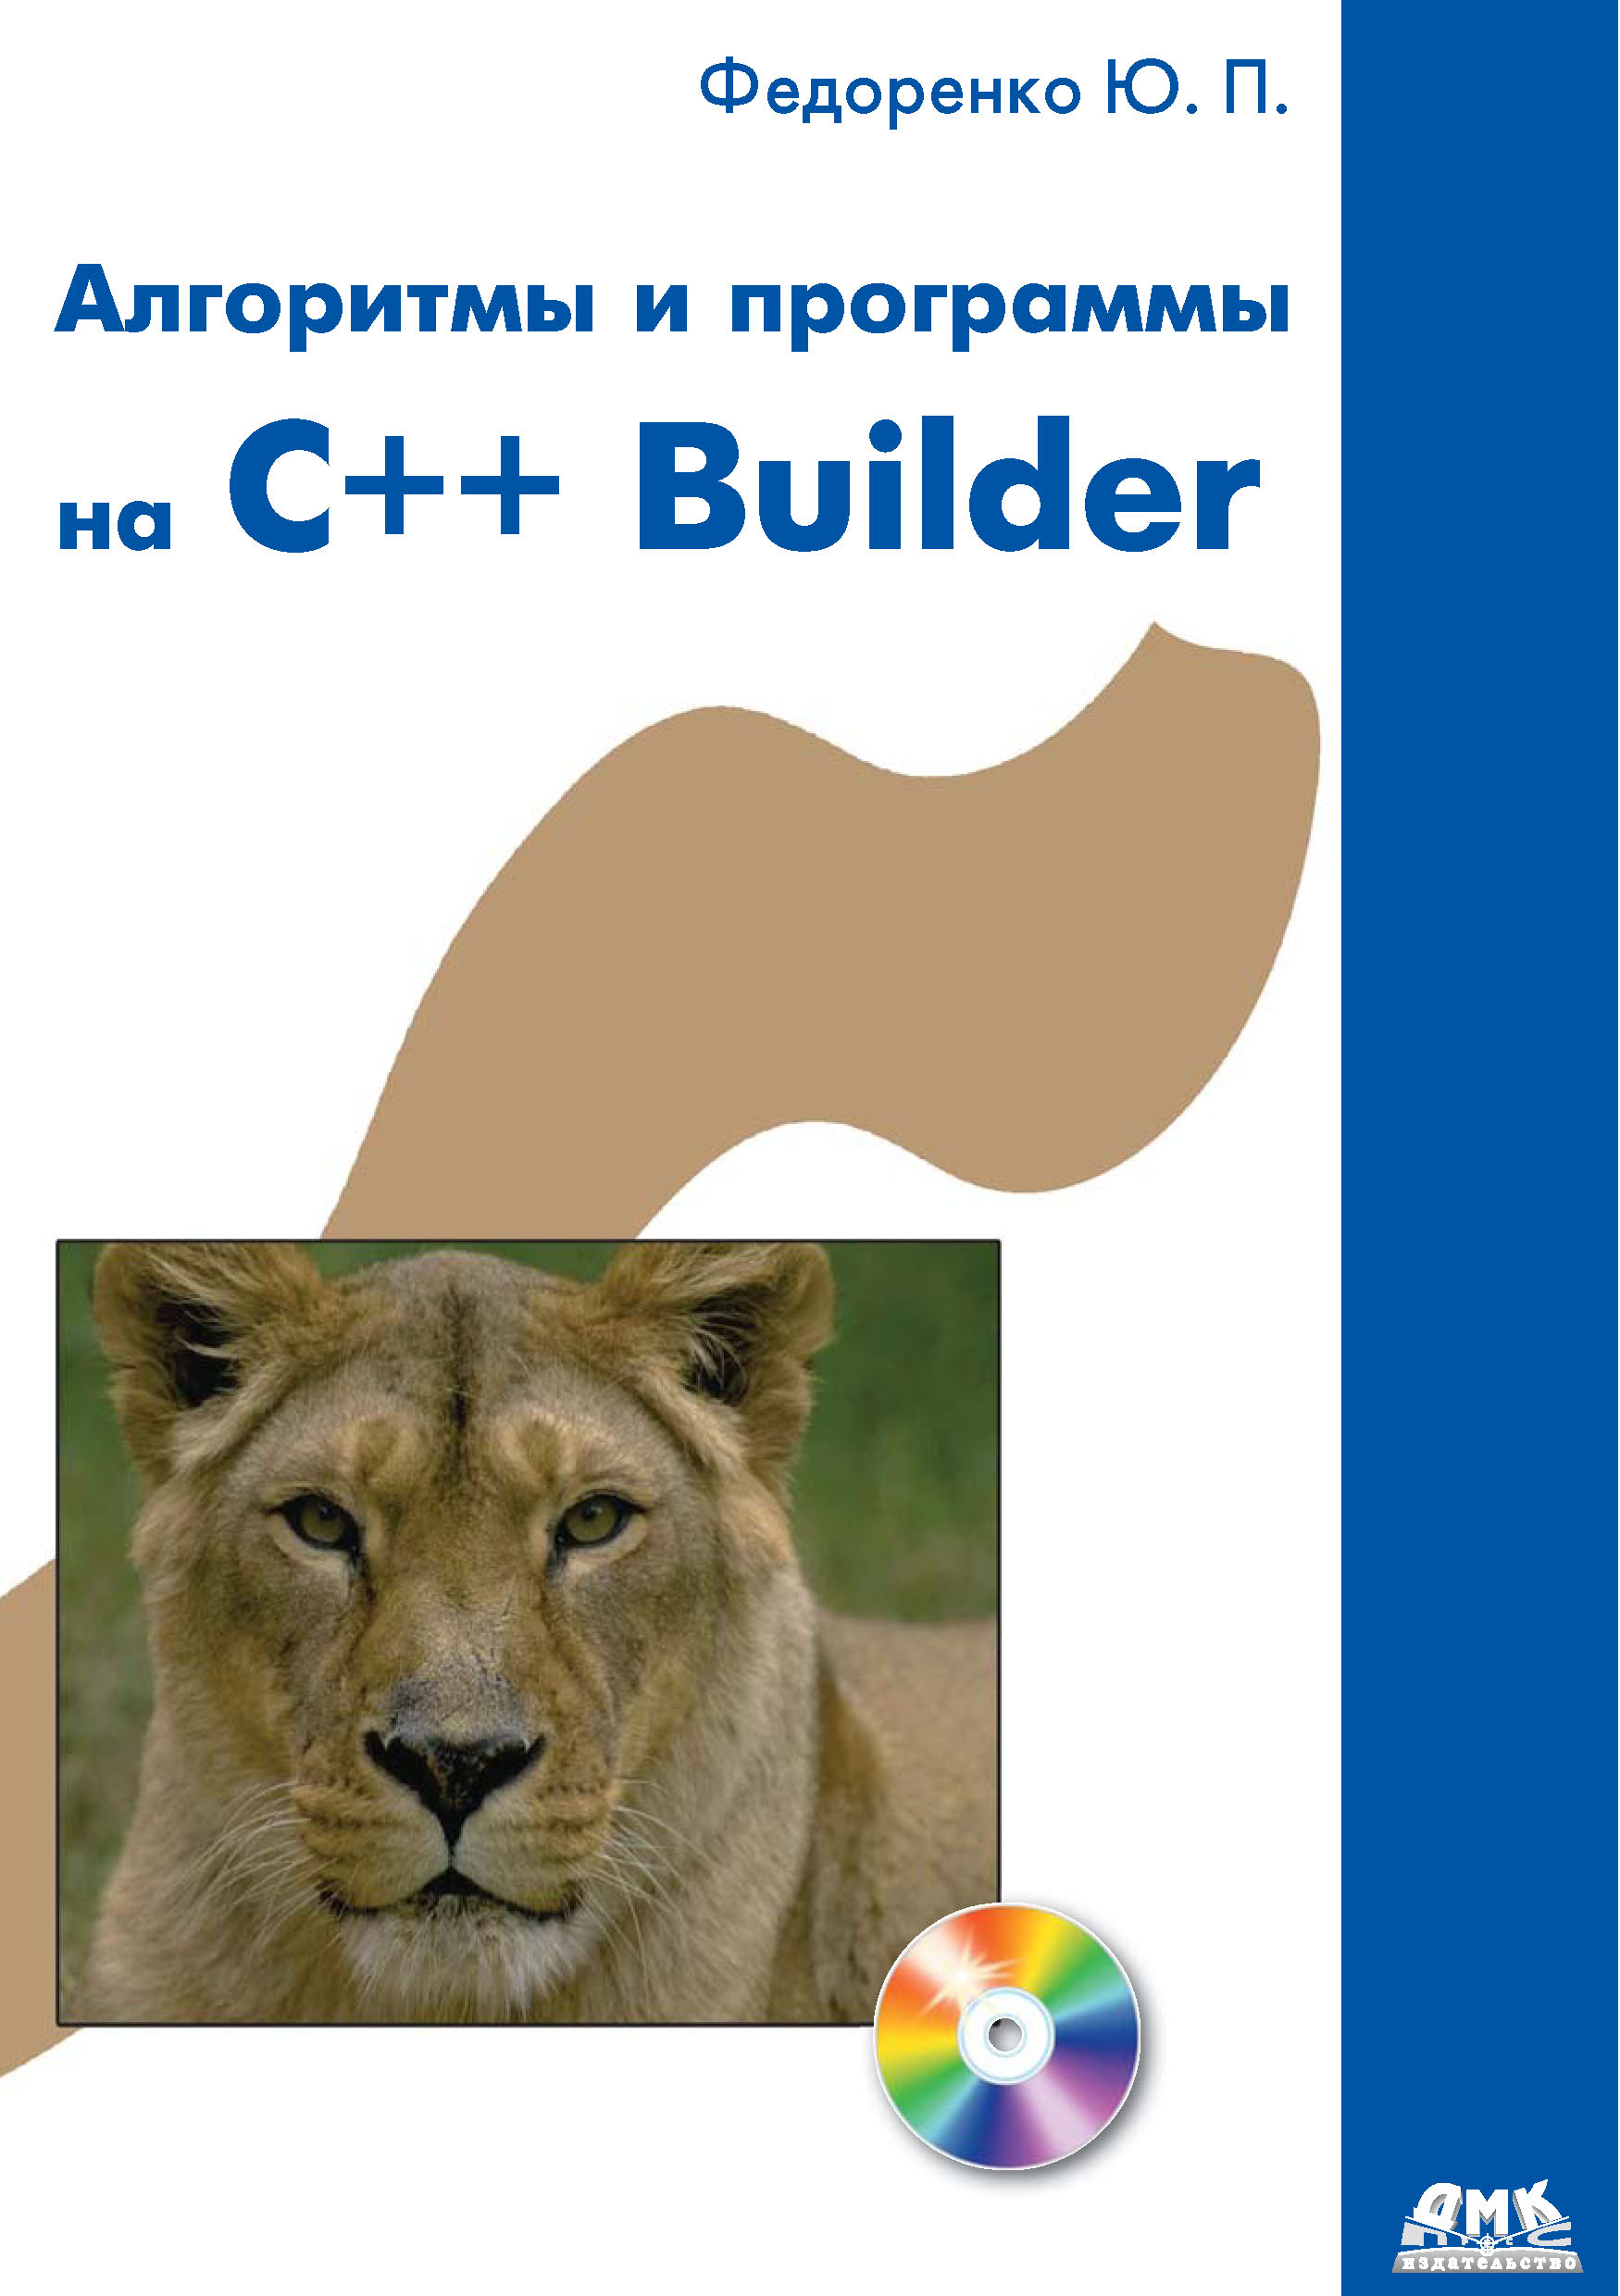 Книга  Алгоритмы и программы на C++ Builder созданная Ю. П. Федоренко может относится к жанру программирование. Стоимость электронной книги Алгоритмы и программы на C++ Builder с идентификатором 22072517 составляет 319.00 руб.